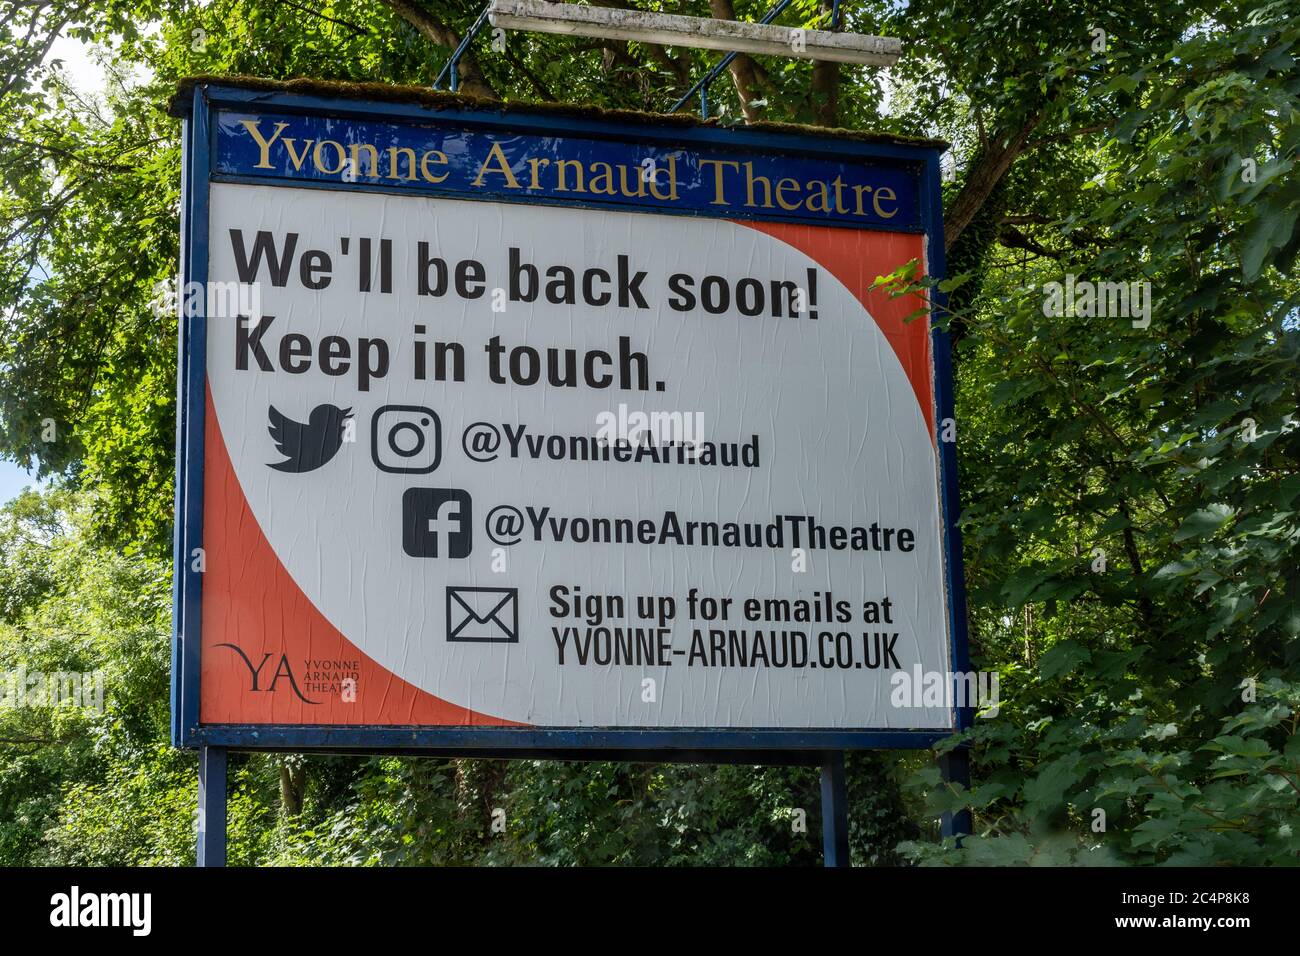 Yvonne Arnaud Theater geschlossen während der Coronavirus covid-19 Pandemie im Juni 2020. Schild mit der Aussage, dass wir bald wieder kommen. Stockfoto